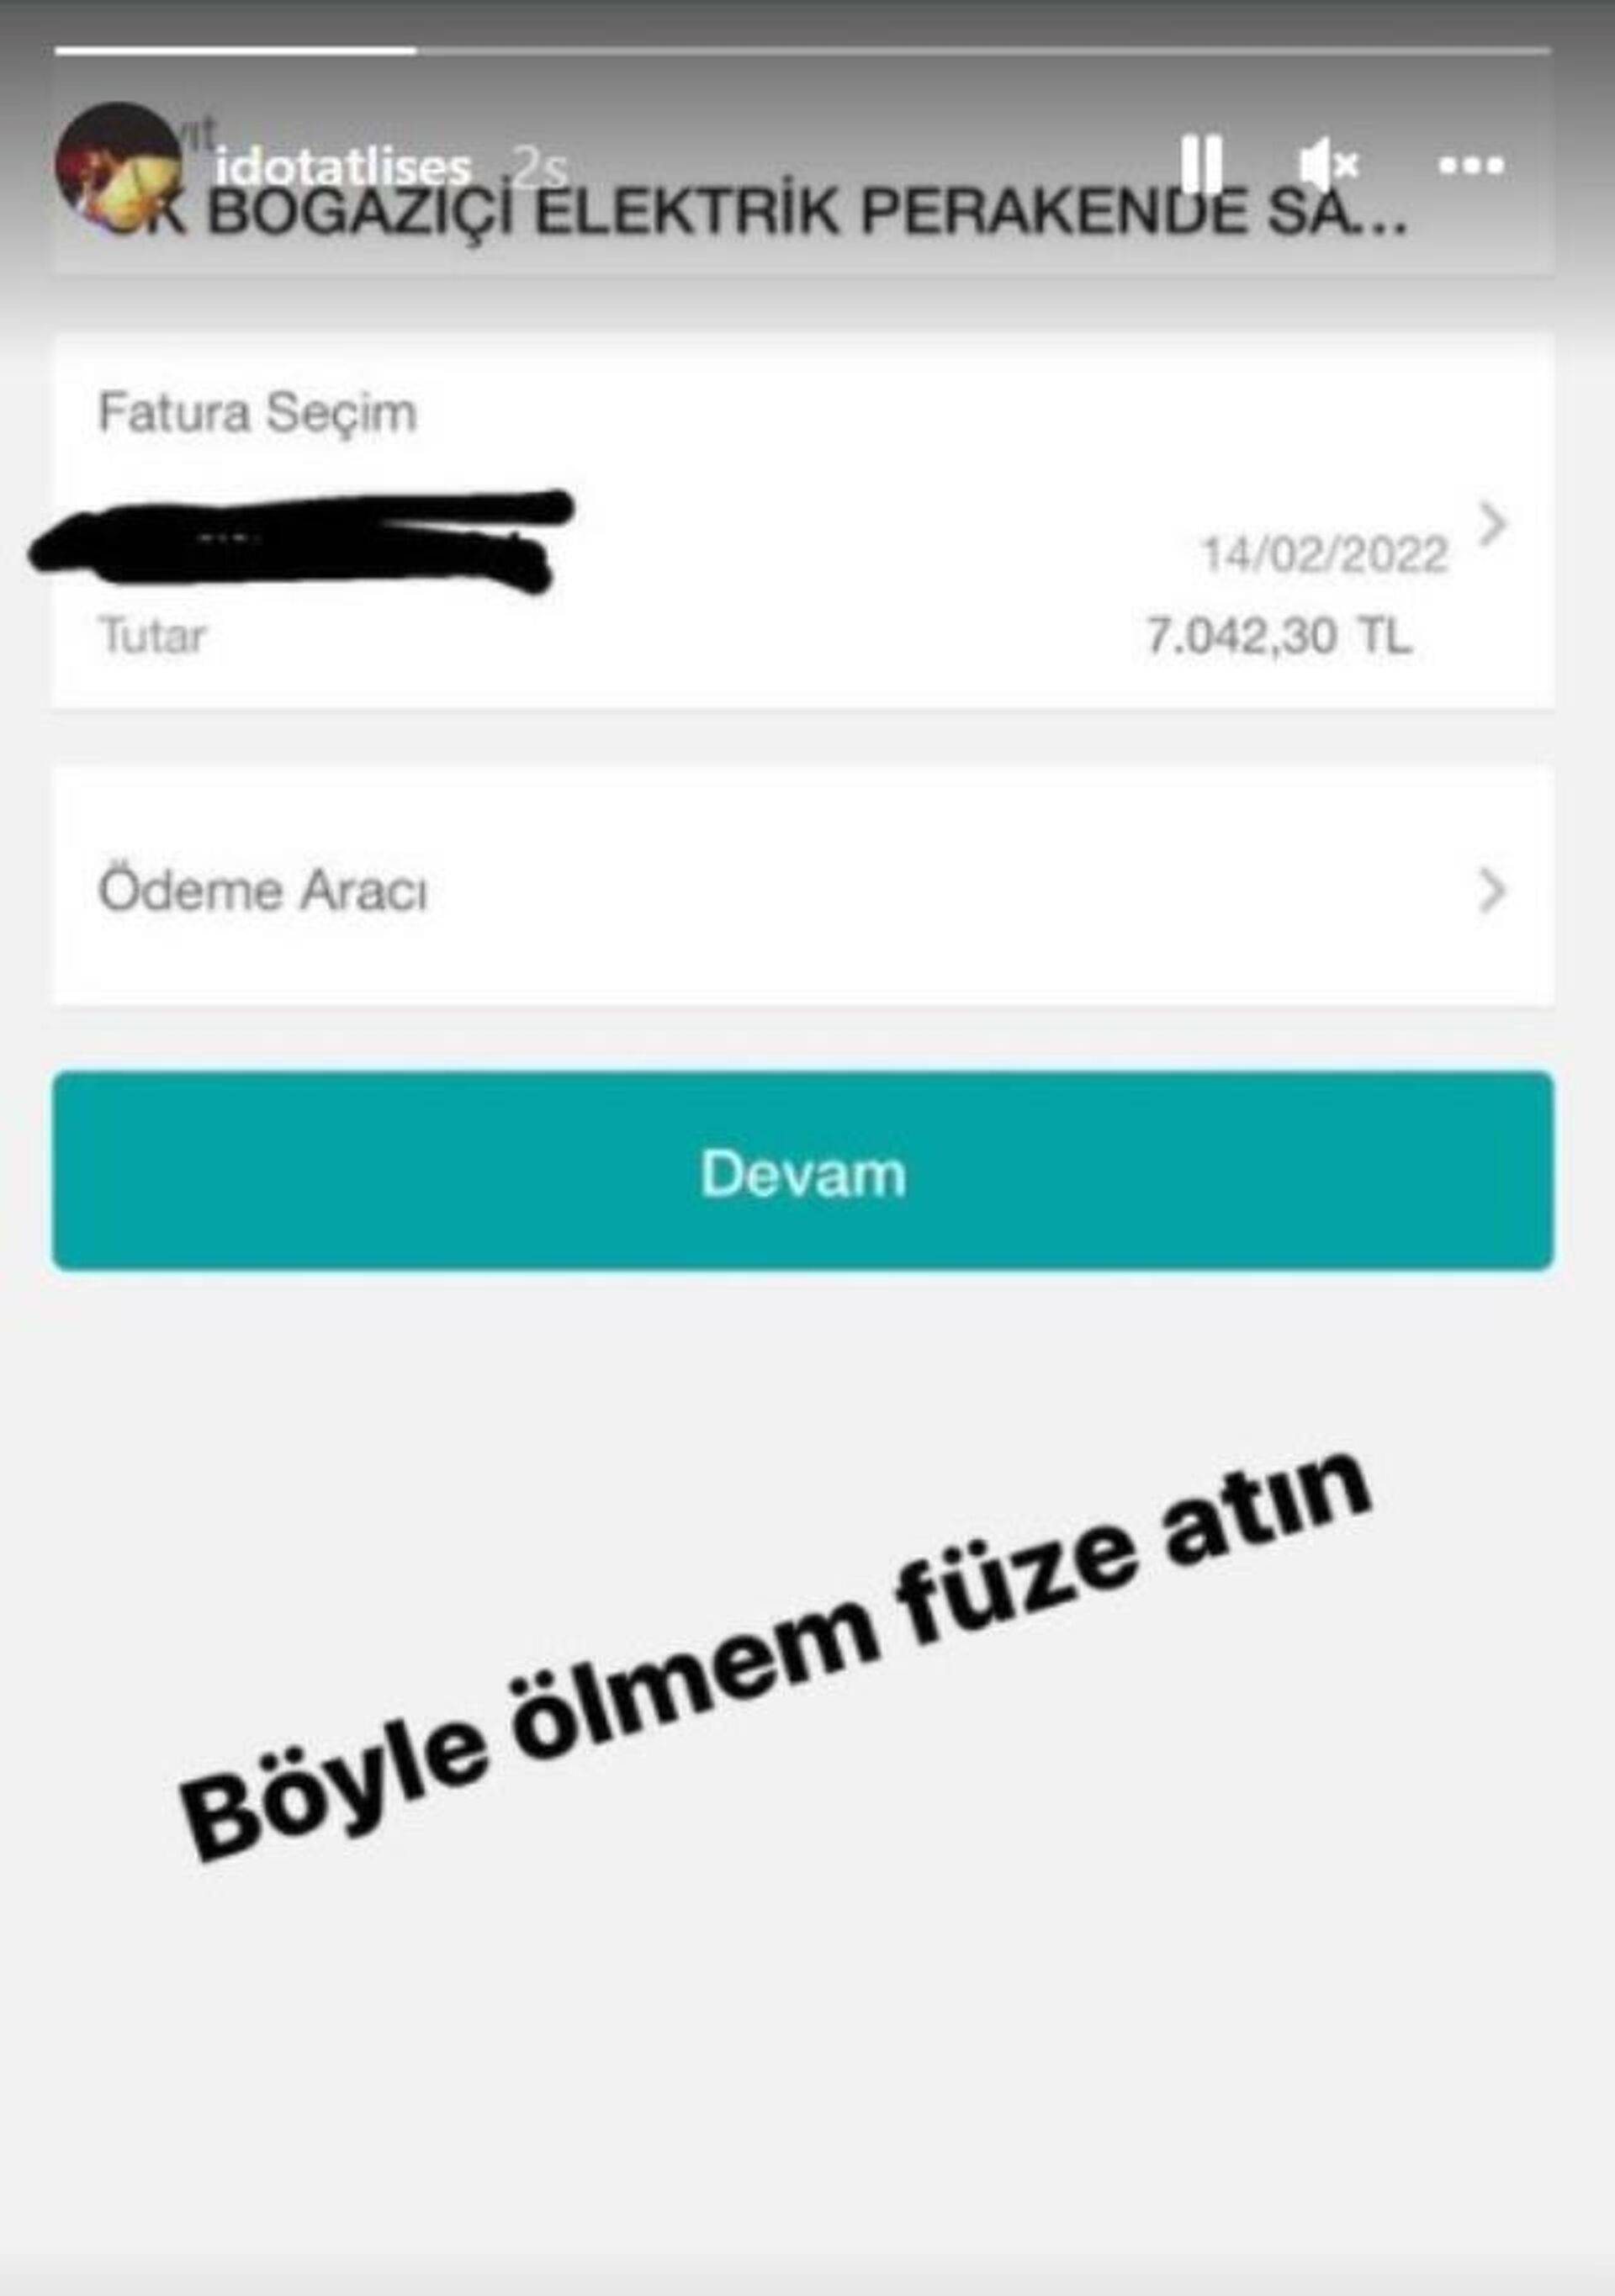 İdo Tatlıses'in 7 bin liralık elektrik faturası - Sputnik Türkiye, 1920, 02.02.2022